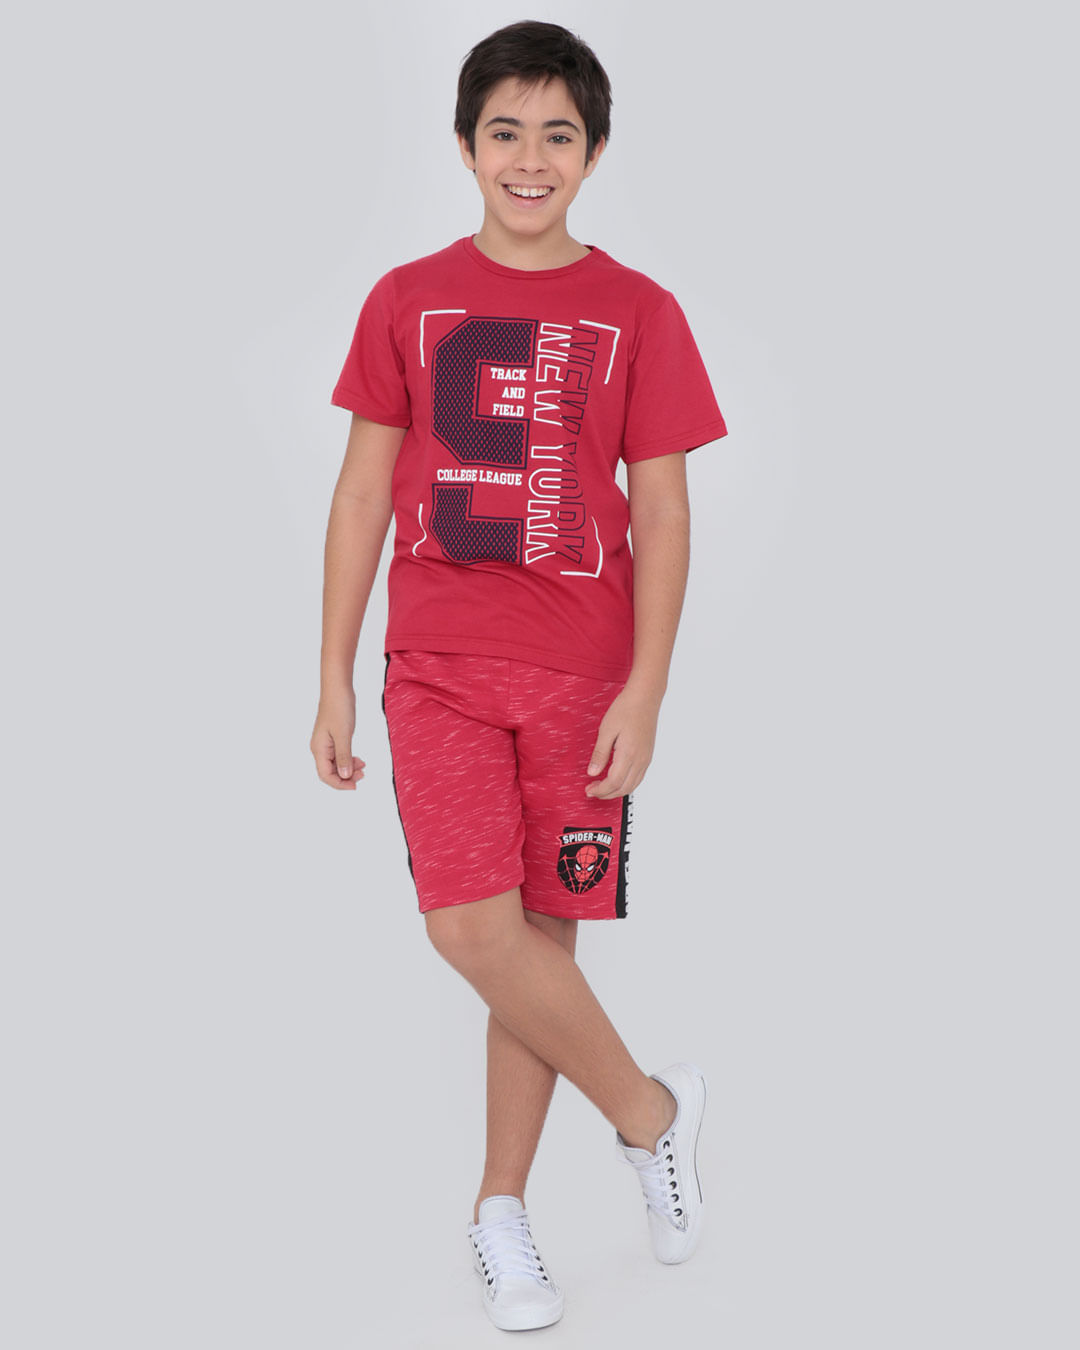 Camiseta-T3009-Mc-M1014-Sport---Vermelho-Medio